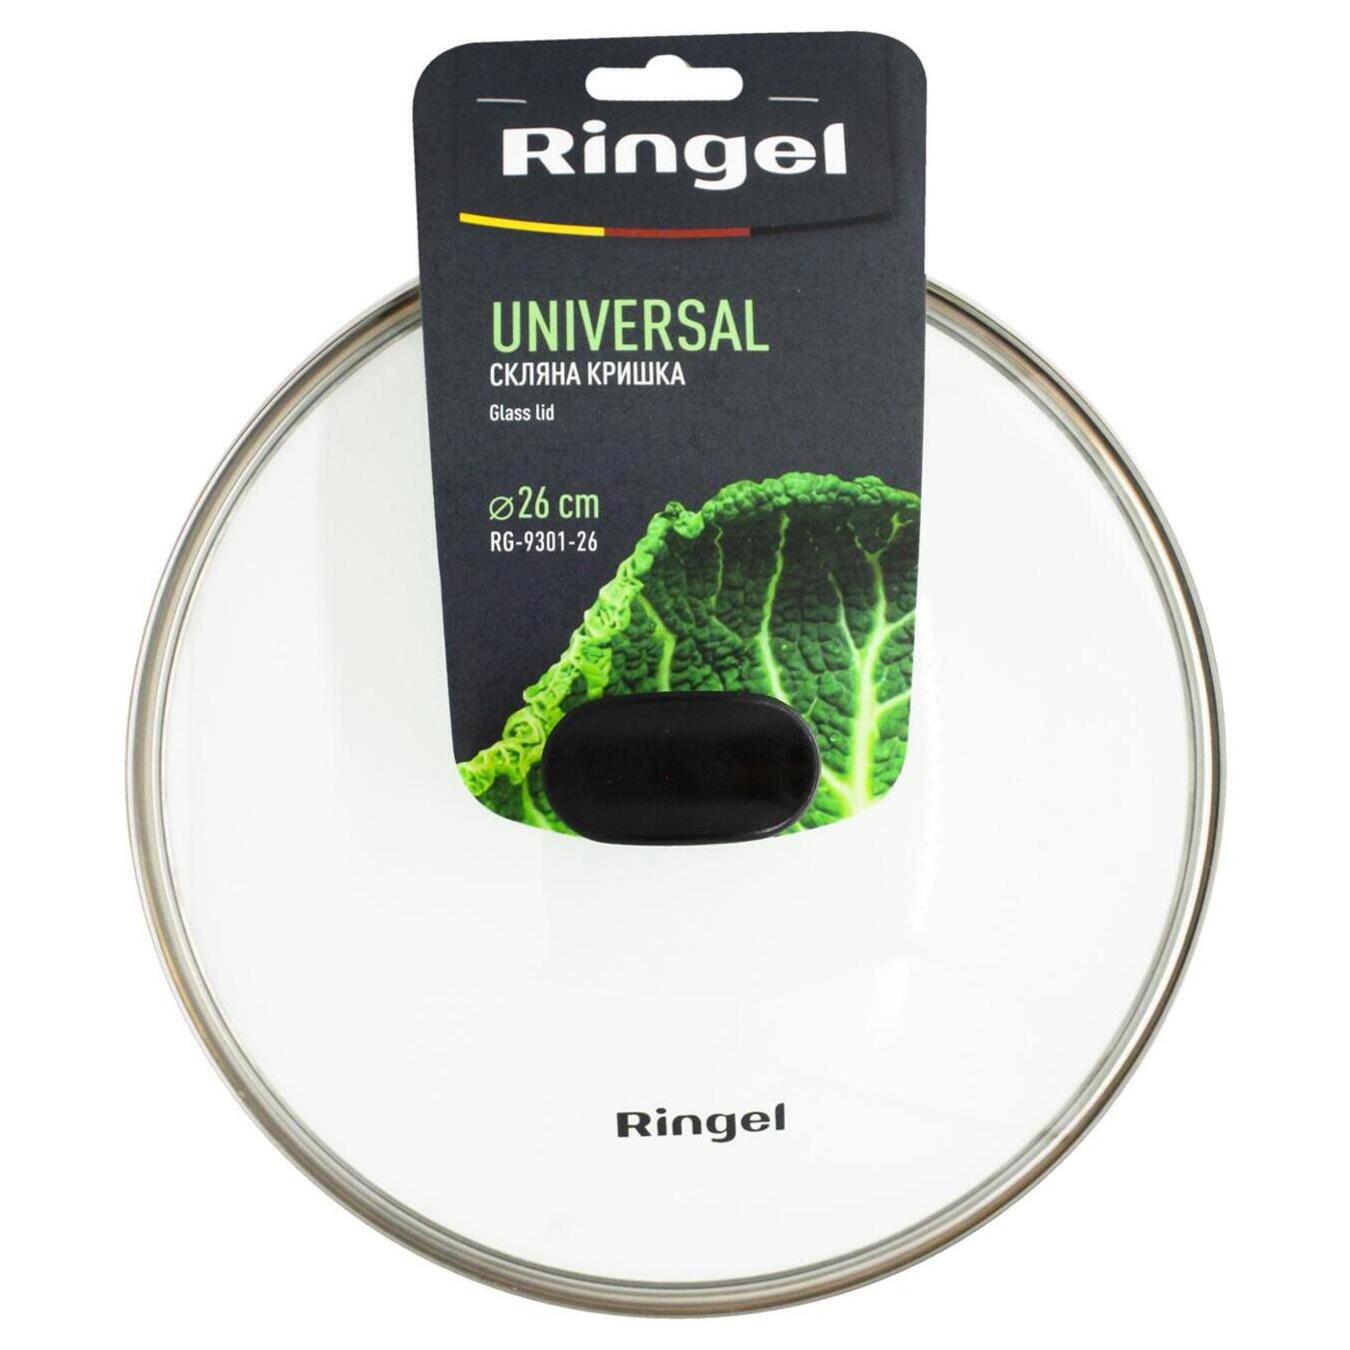 Cover Ringel Universal 26 cm